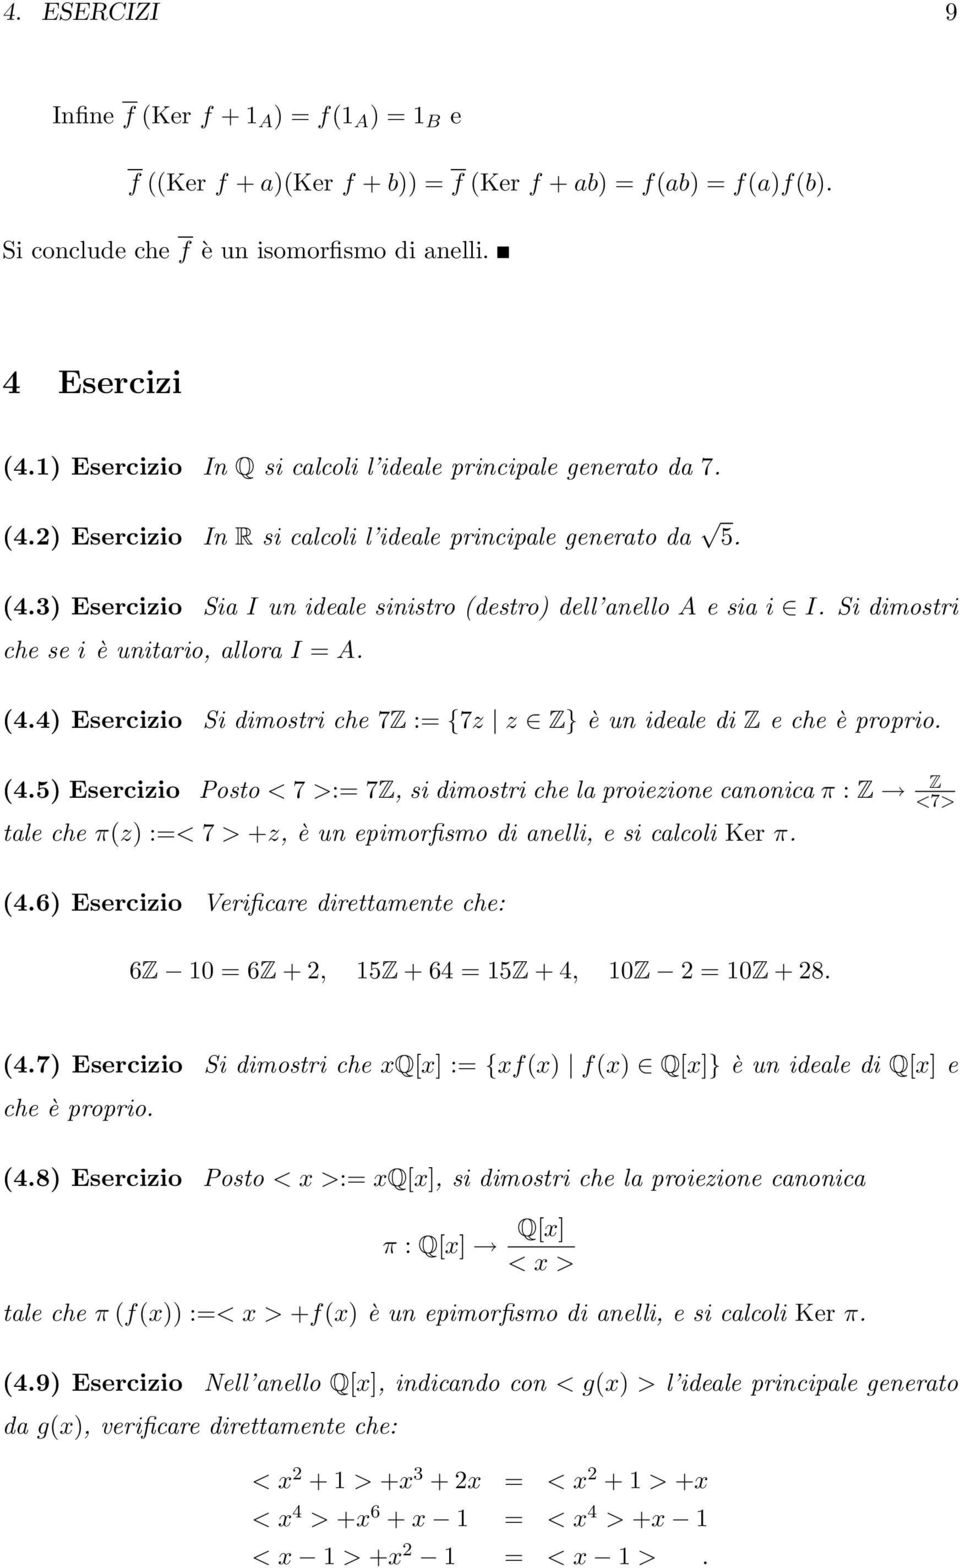 = A 44 Esercizio Si dimostri che 7Z := {7z z Z} è un ideale di Z e che è proprio 45 Esercizio Posto < 7 >:= 7Z, si dimostri che la proiezione canonica π : Z Z <7> tale che πz :=< 7 > +z, è un